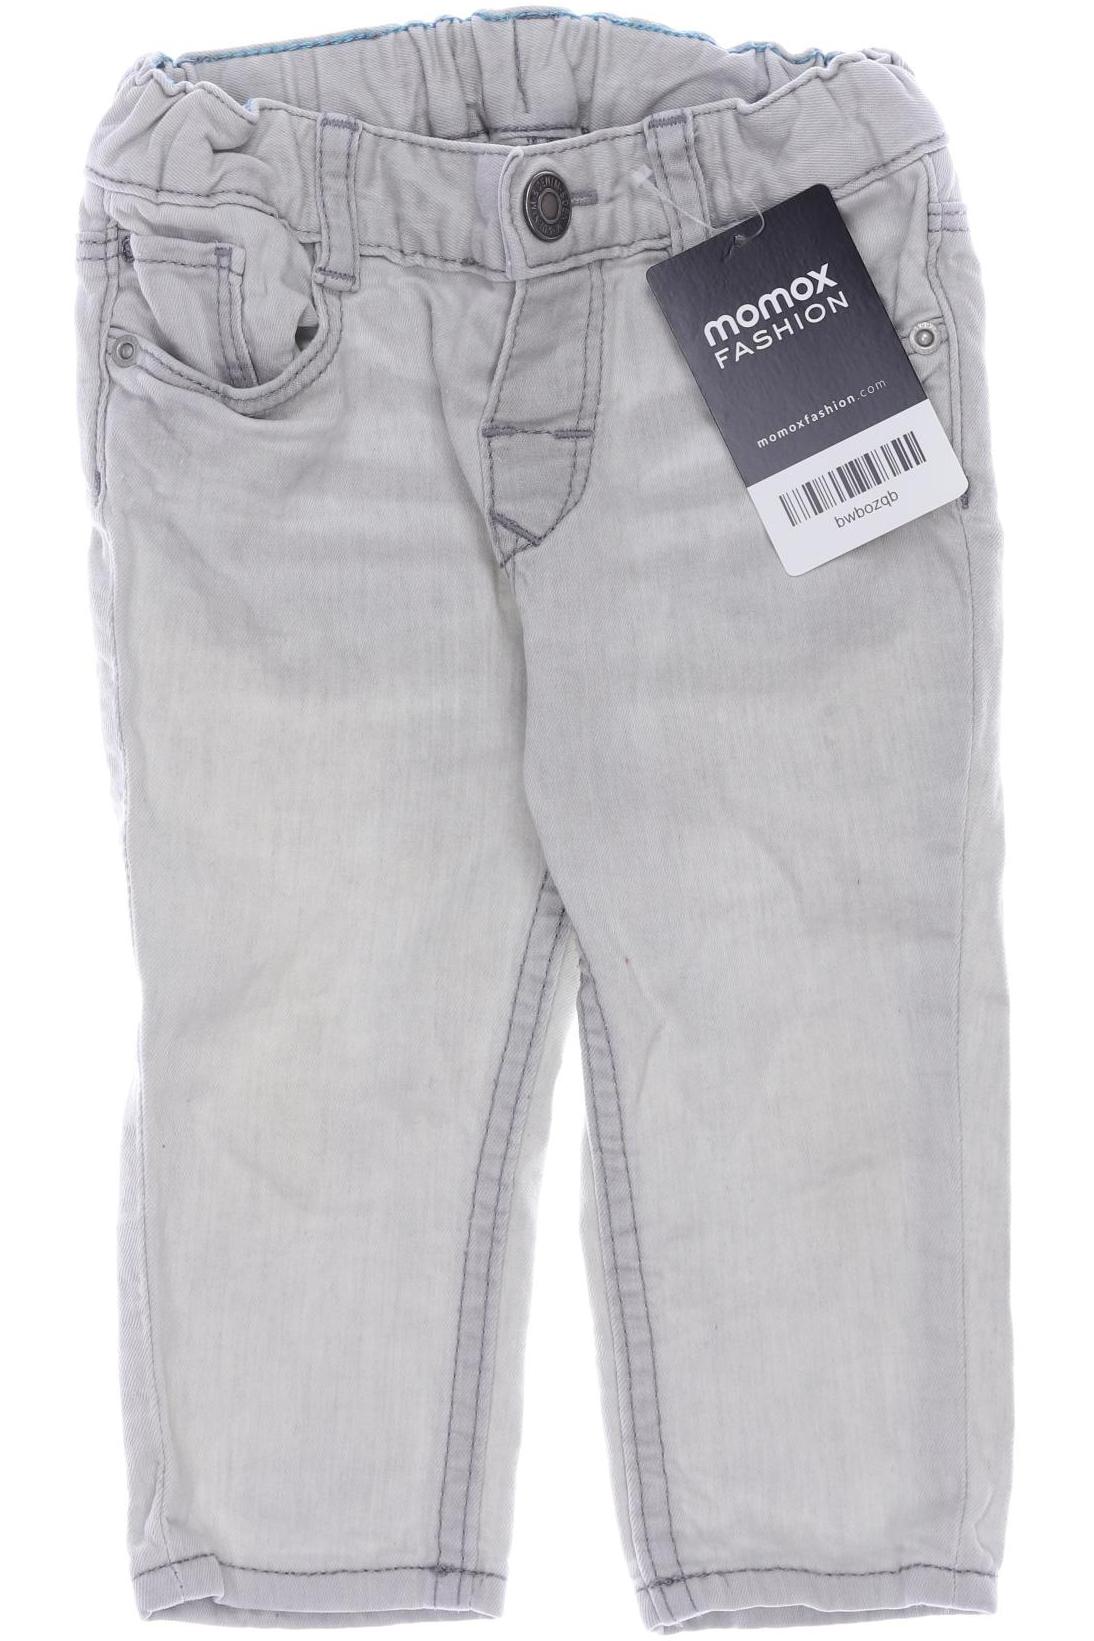 H&M Jungen Jeans, cremeweiß von H&M